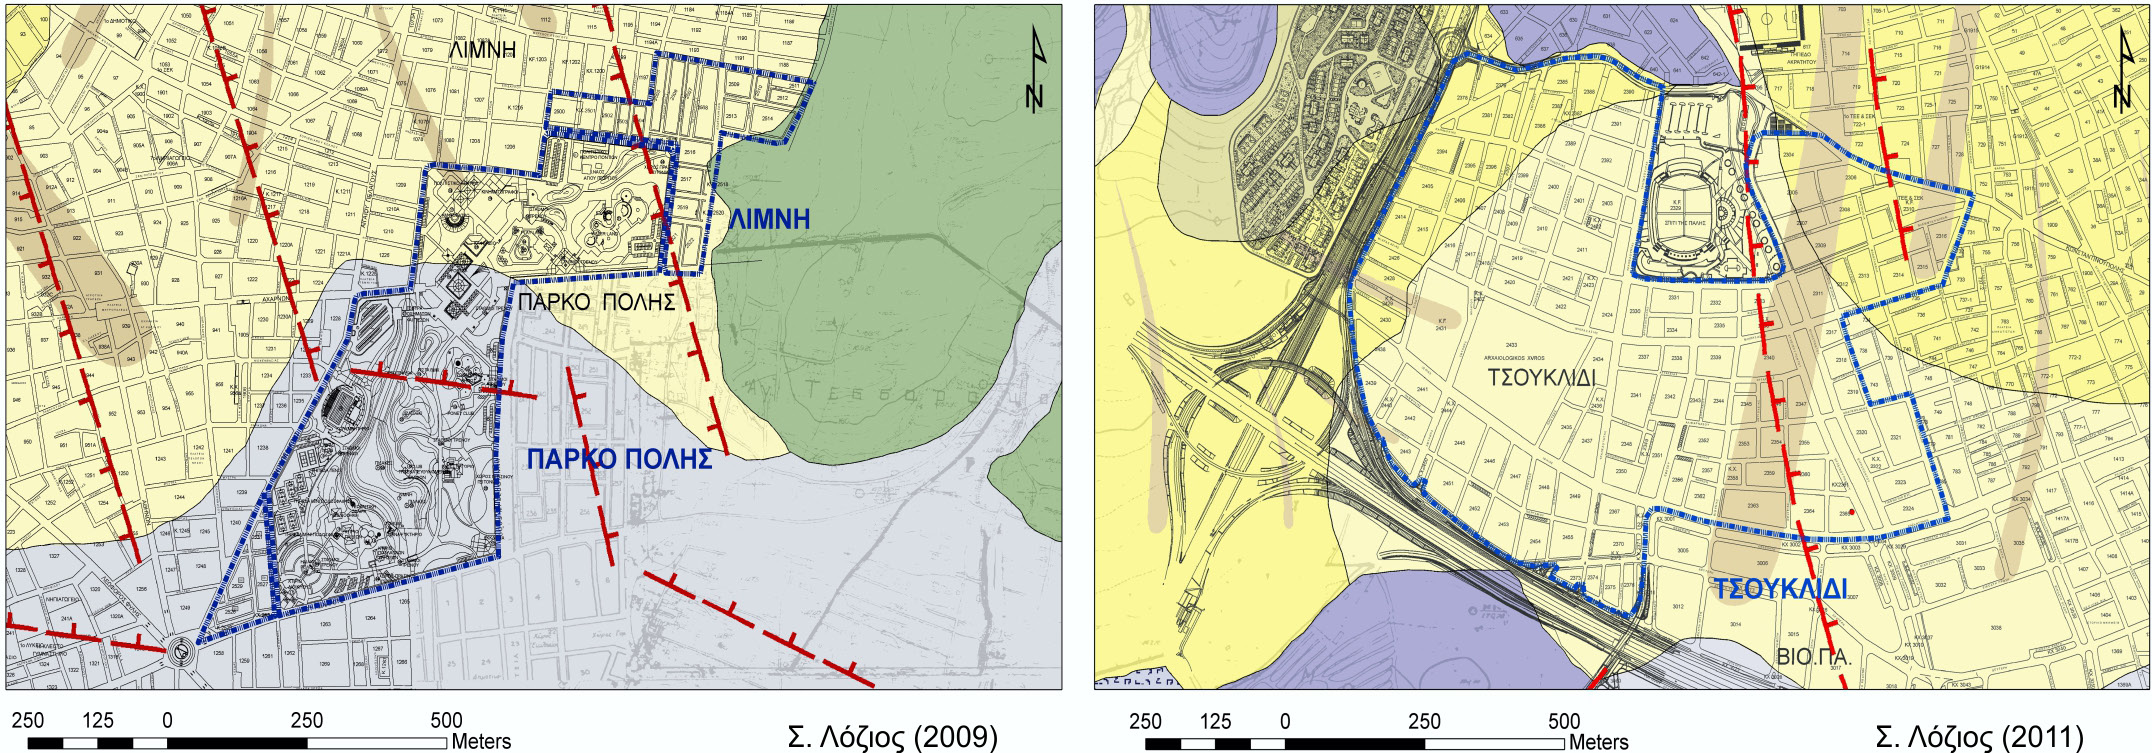 12 Γεωλογικός χάρτης, κλίμακας 1:2.000, του Δήμου Άνω Λιοσίων, που έχει κατασκευασθεί στα πλαίσια Μελέτης Γεωλογικής Καταλληλότητας για την επέκταση σχεδίου πόλης.